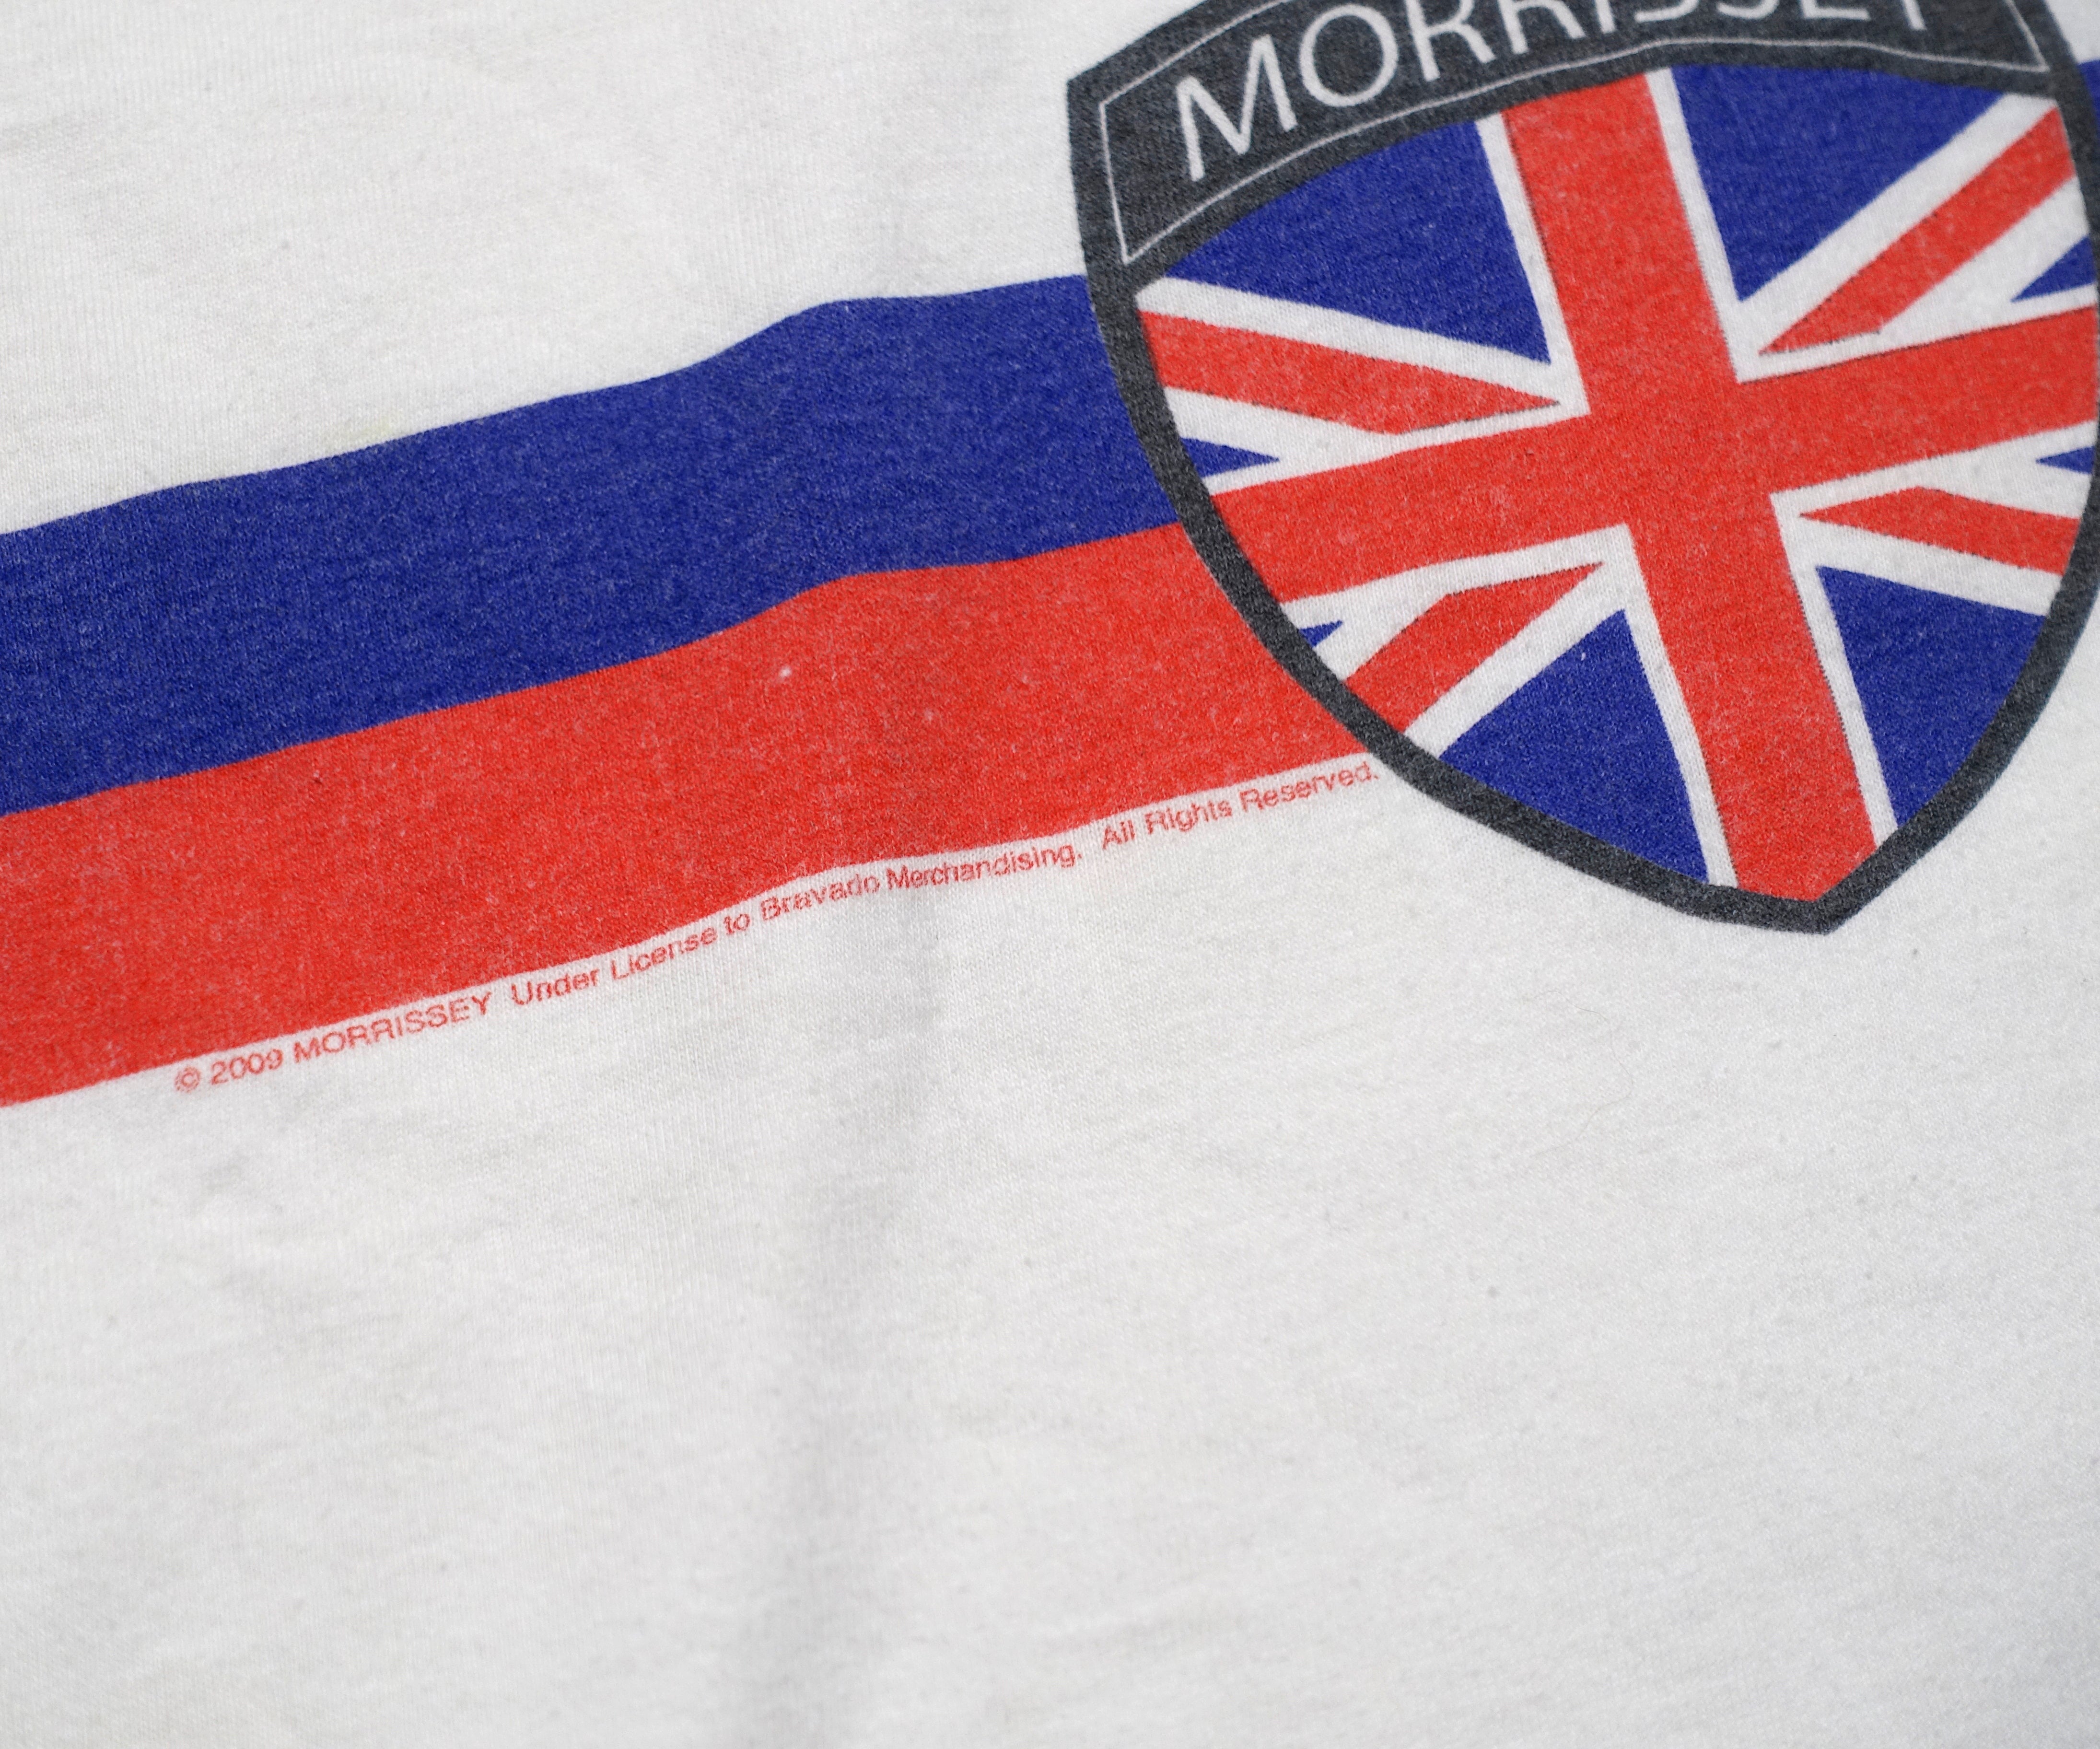 Morrissey - British Crest 2009 Tour Shirt Size Large